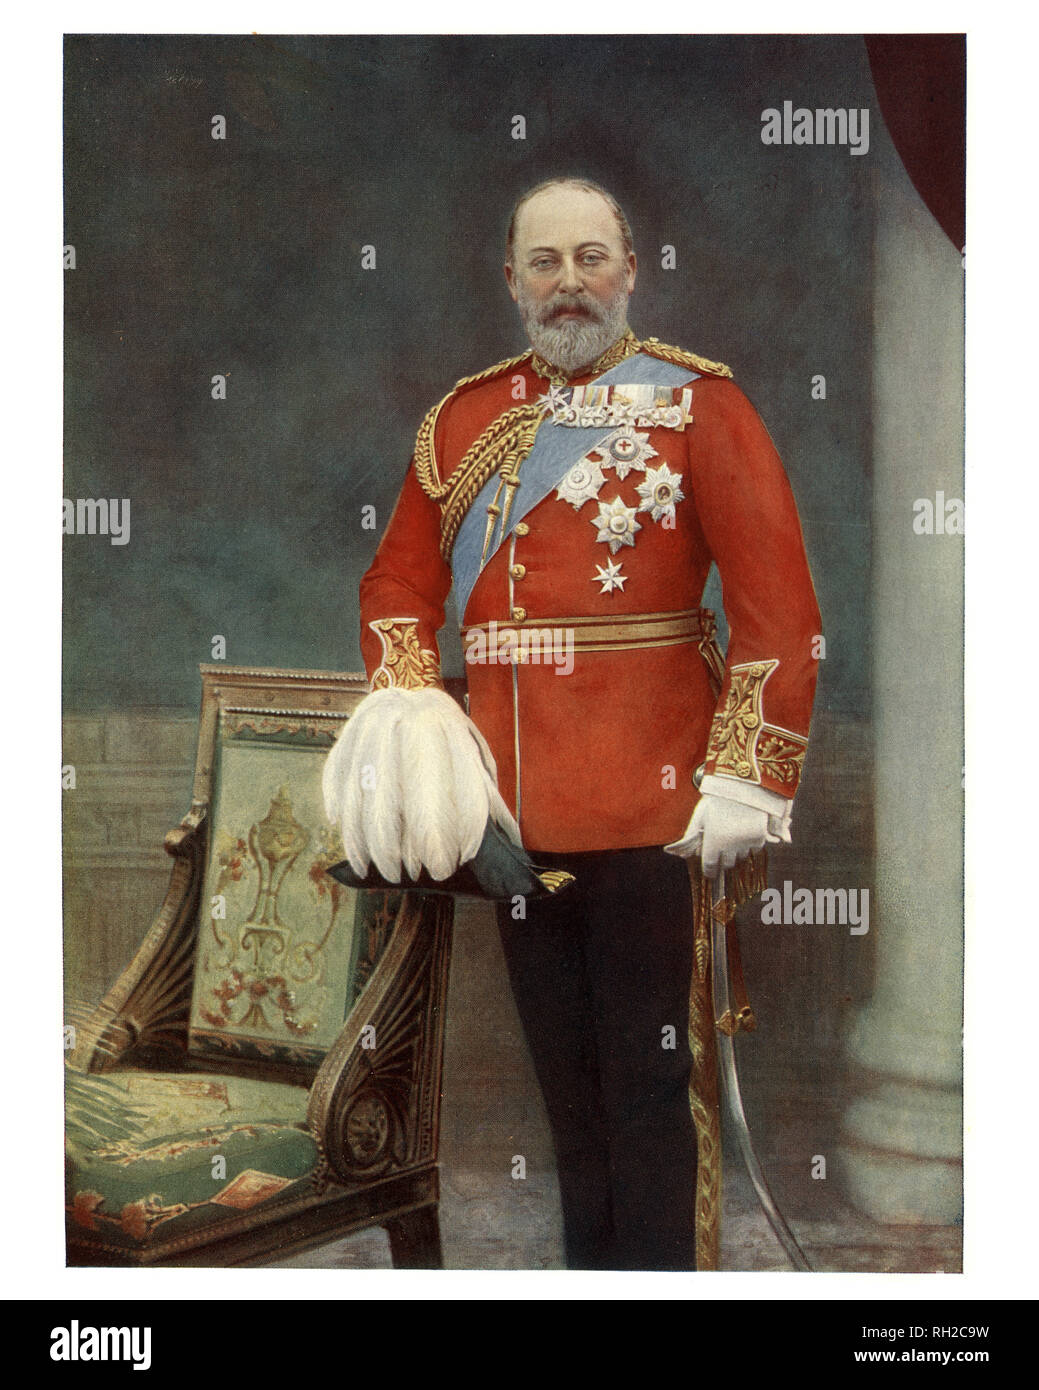 Édouard VII (Albert Edward ; 9 novembre 1841 au 6 mai 1910) fut roi du Royaume-Uni de Grande-Bretagne et d'Irlande et empereur de l'Inde à partir du 22 janvier 1901 jusqu'à sa mort en 1910. Banque D'Images